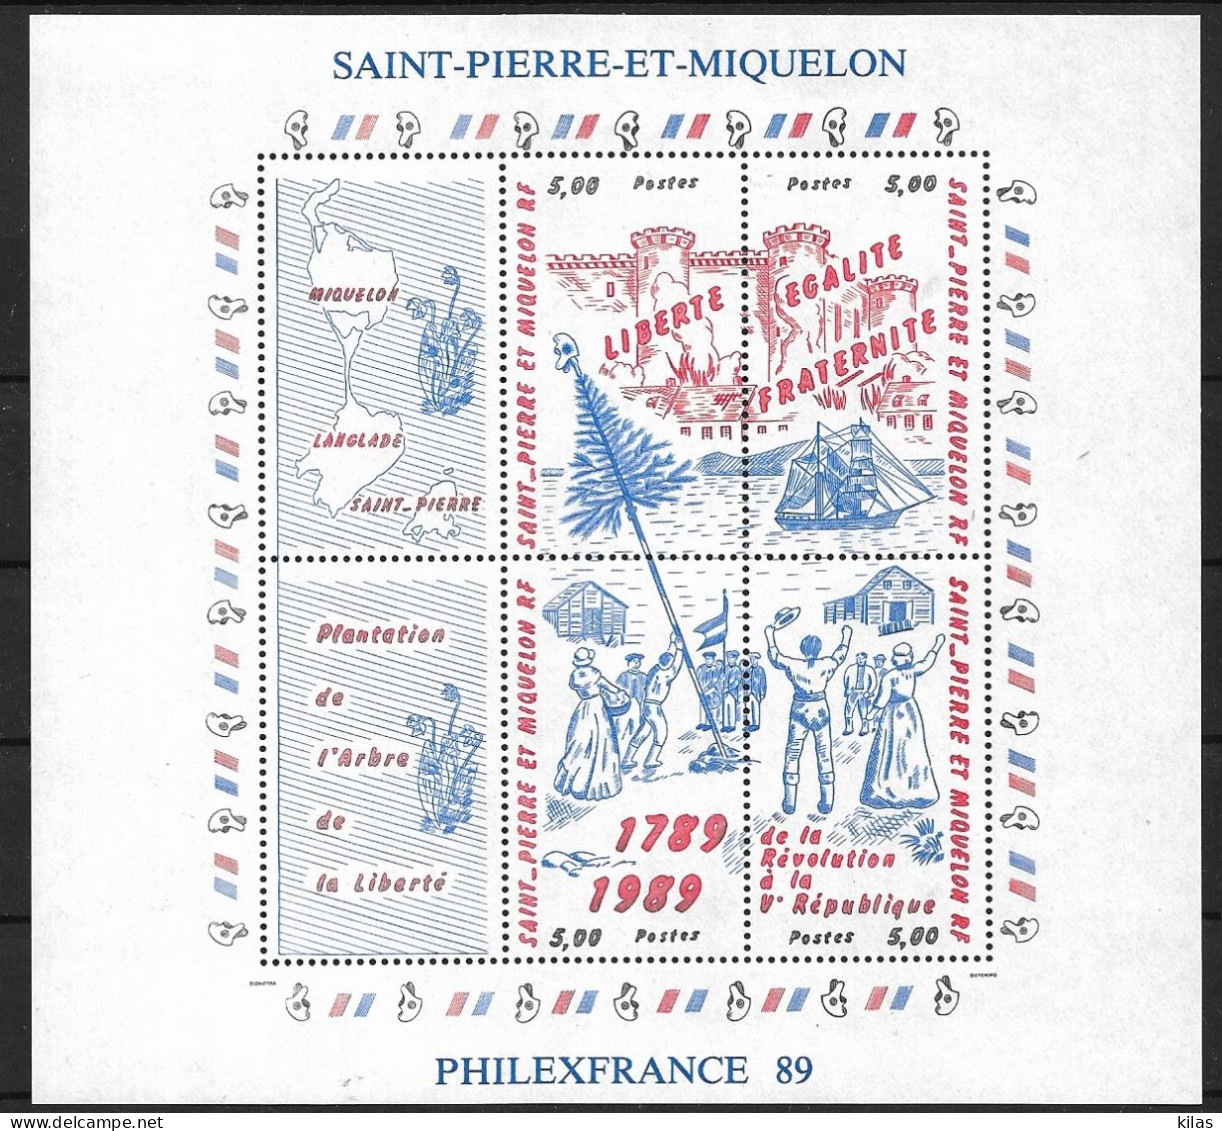 Saint Pierre And Miquelon 1989 PHILEXFRANCE 89 French Revolution MNH - Blocs-feuillets